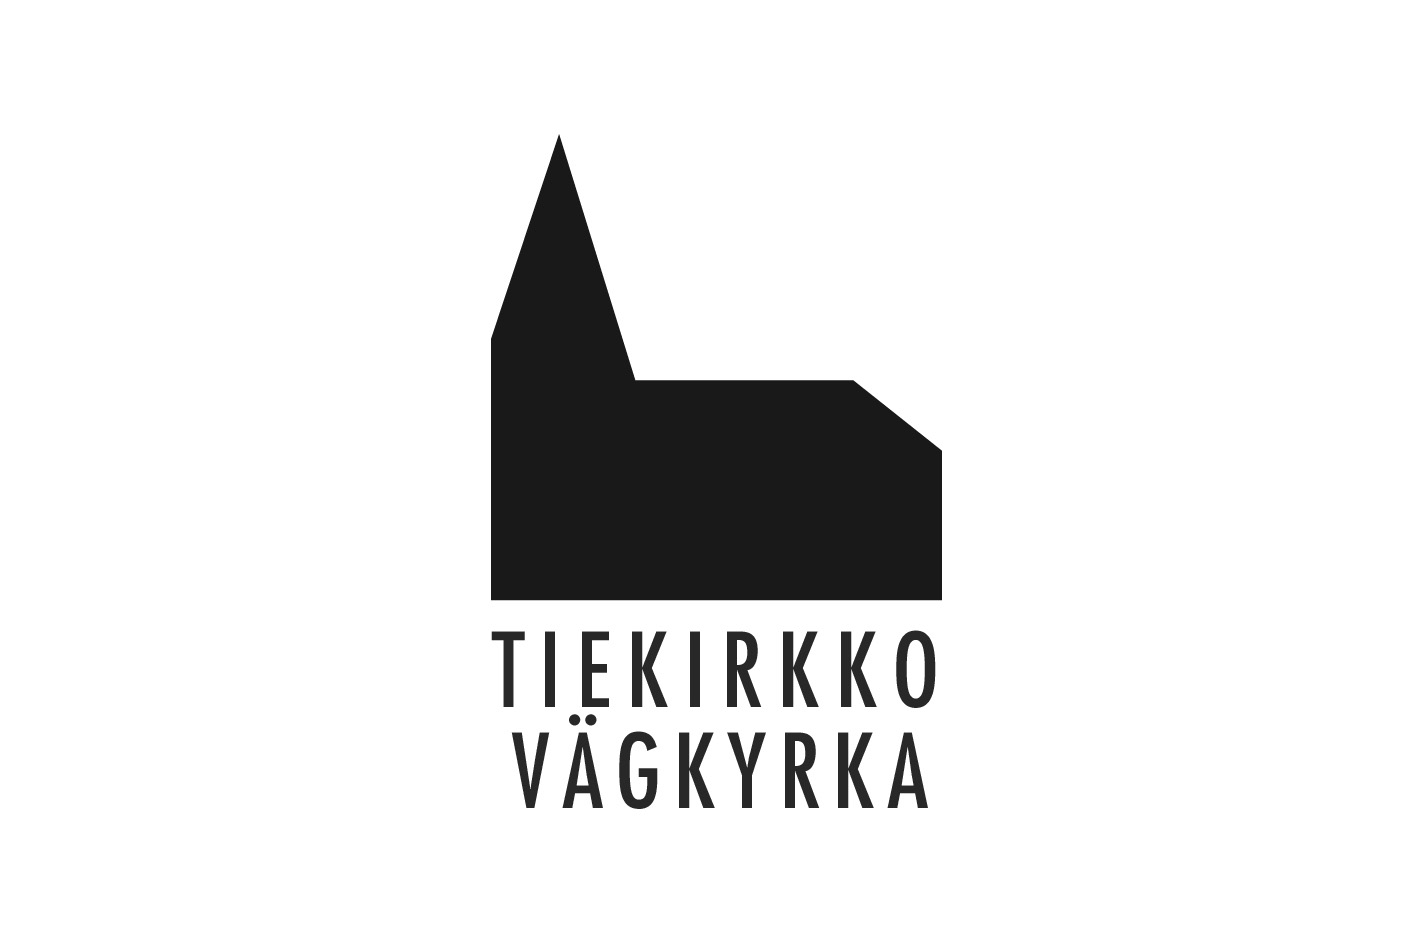 Garfik med svart kyrka och texten Tiekirkko Vägkyrka.